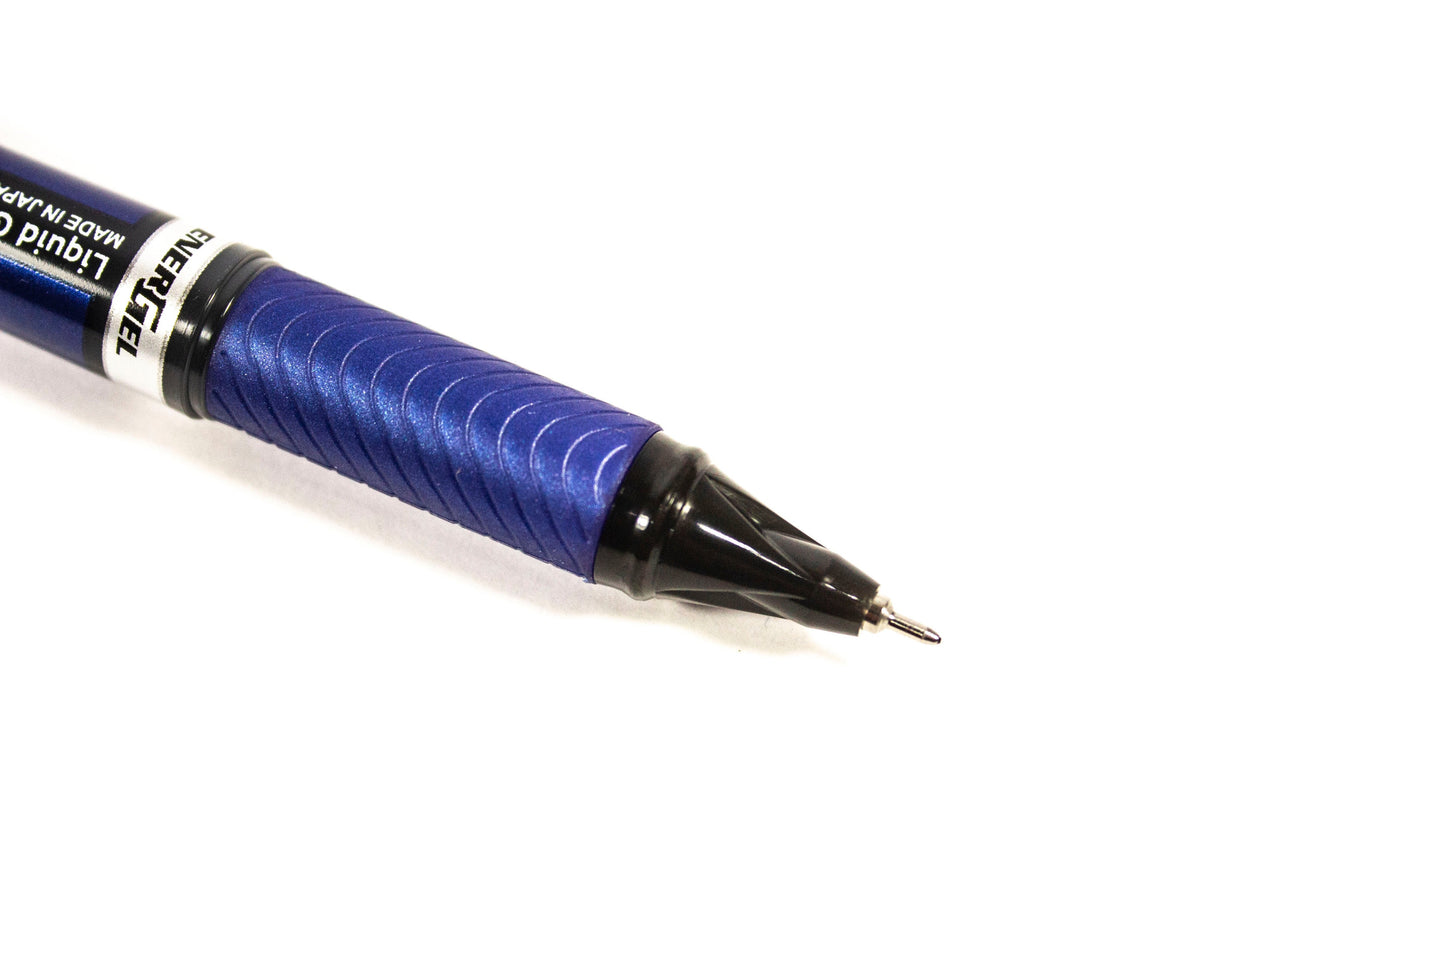 Pentel Energel Gel Pen BLN25 0.5mm | 12pcs